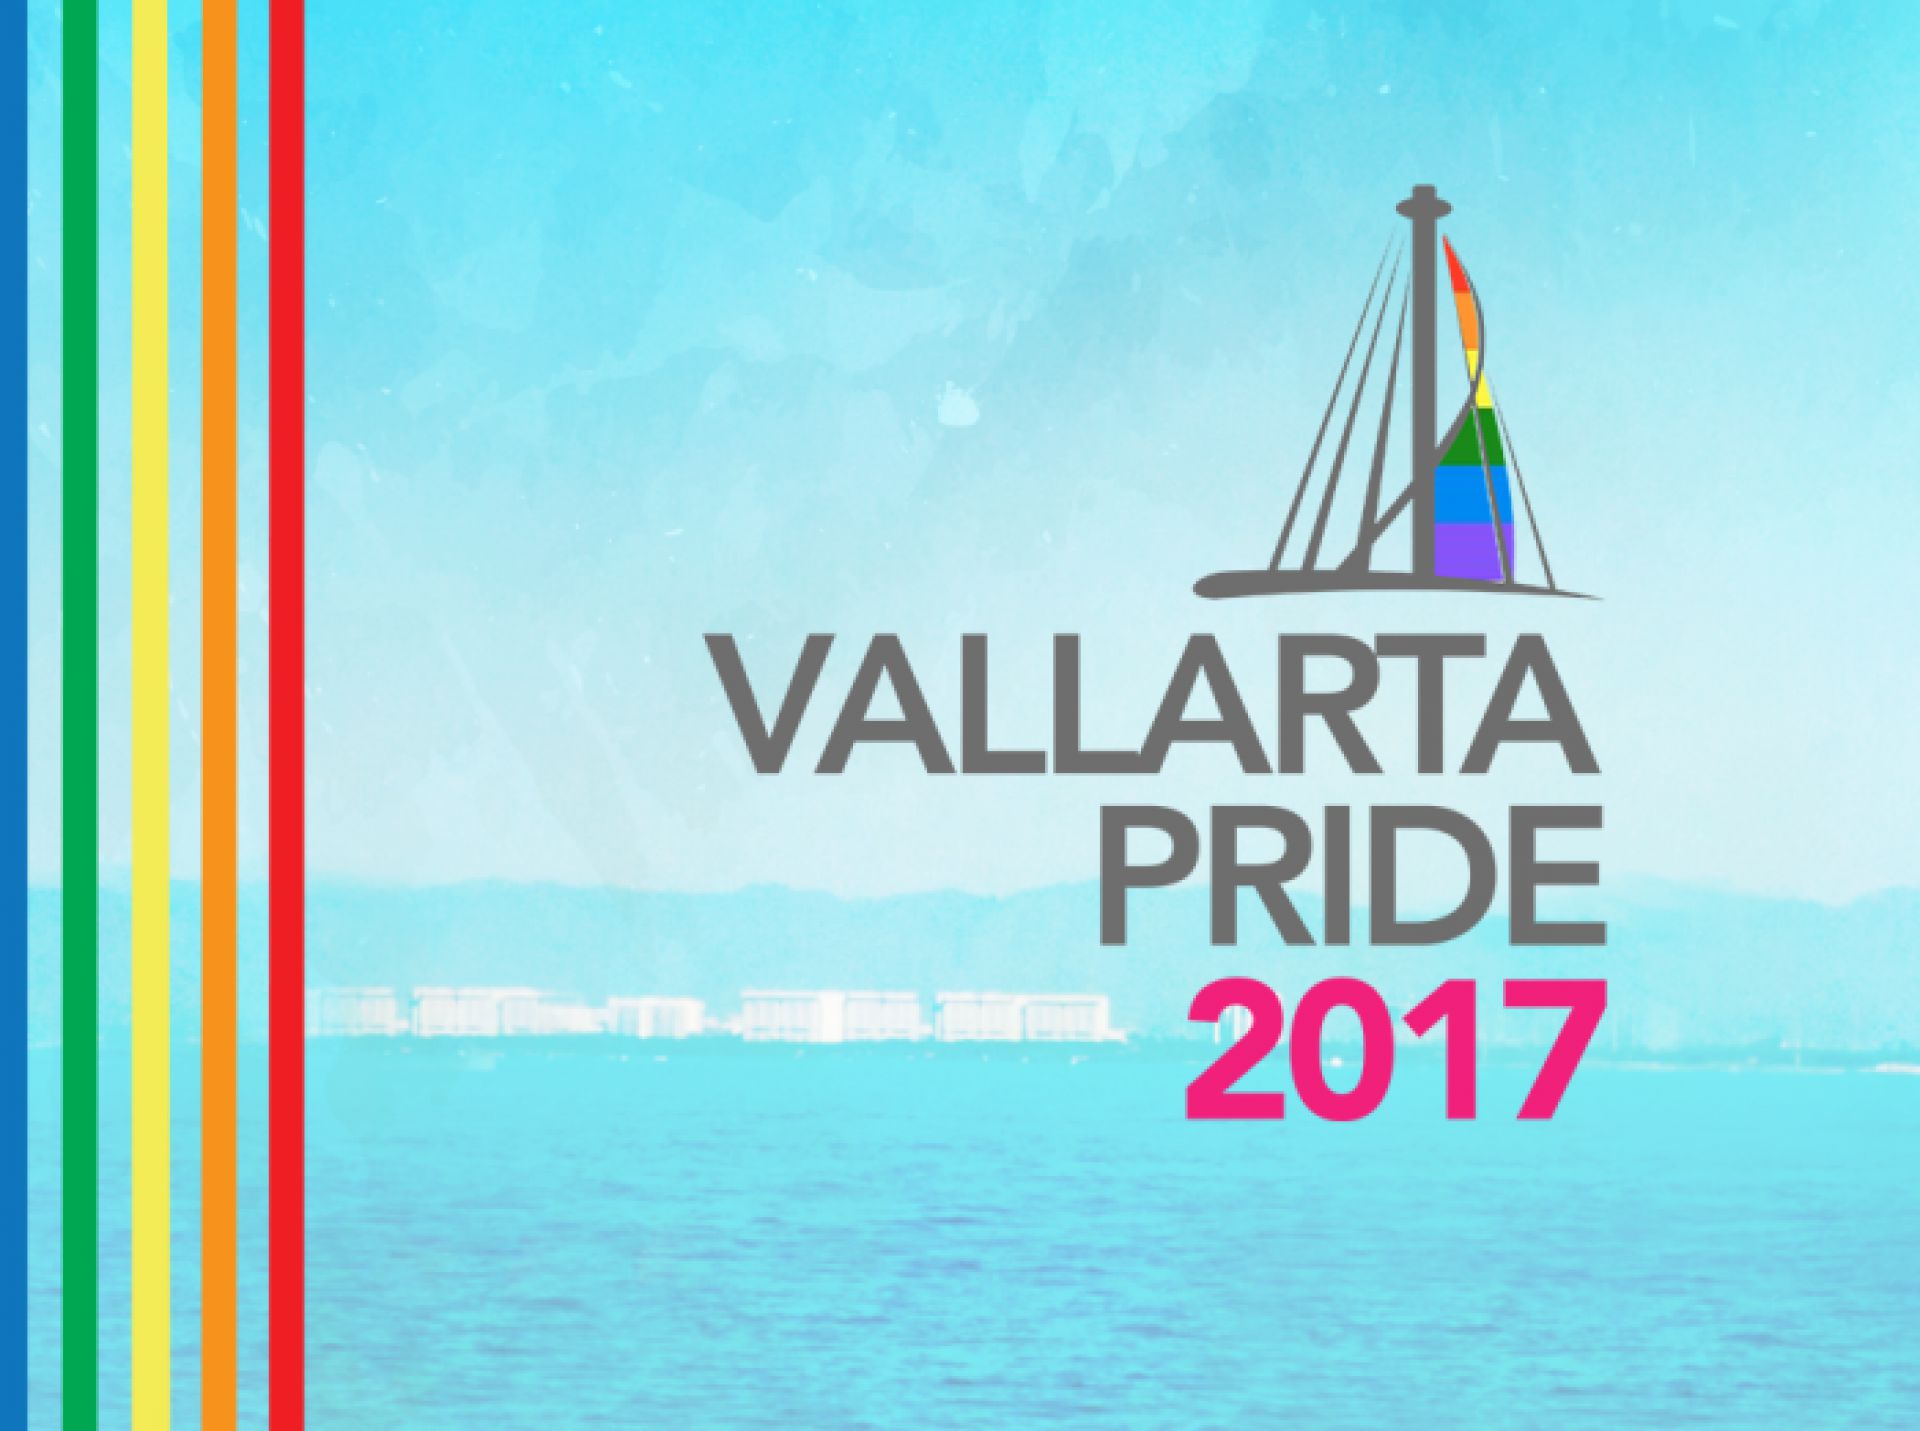 Vallarta Pride LGBTQfriendly Puerto Vallarta ellgeeBE